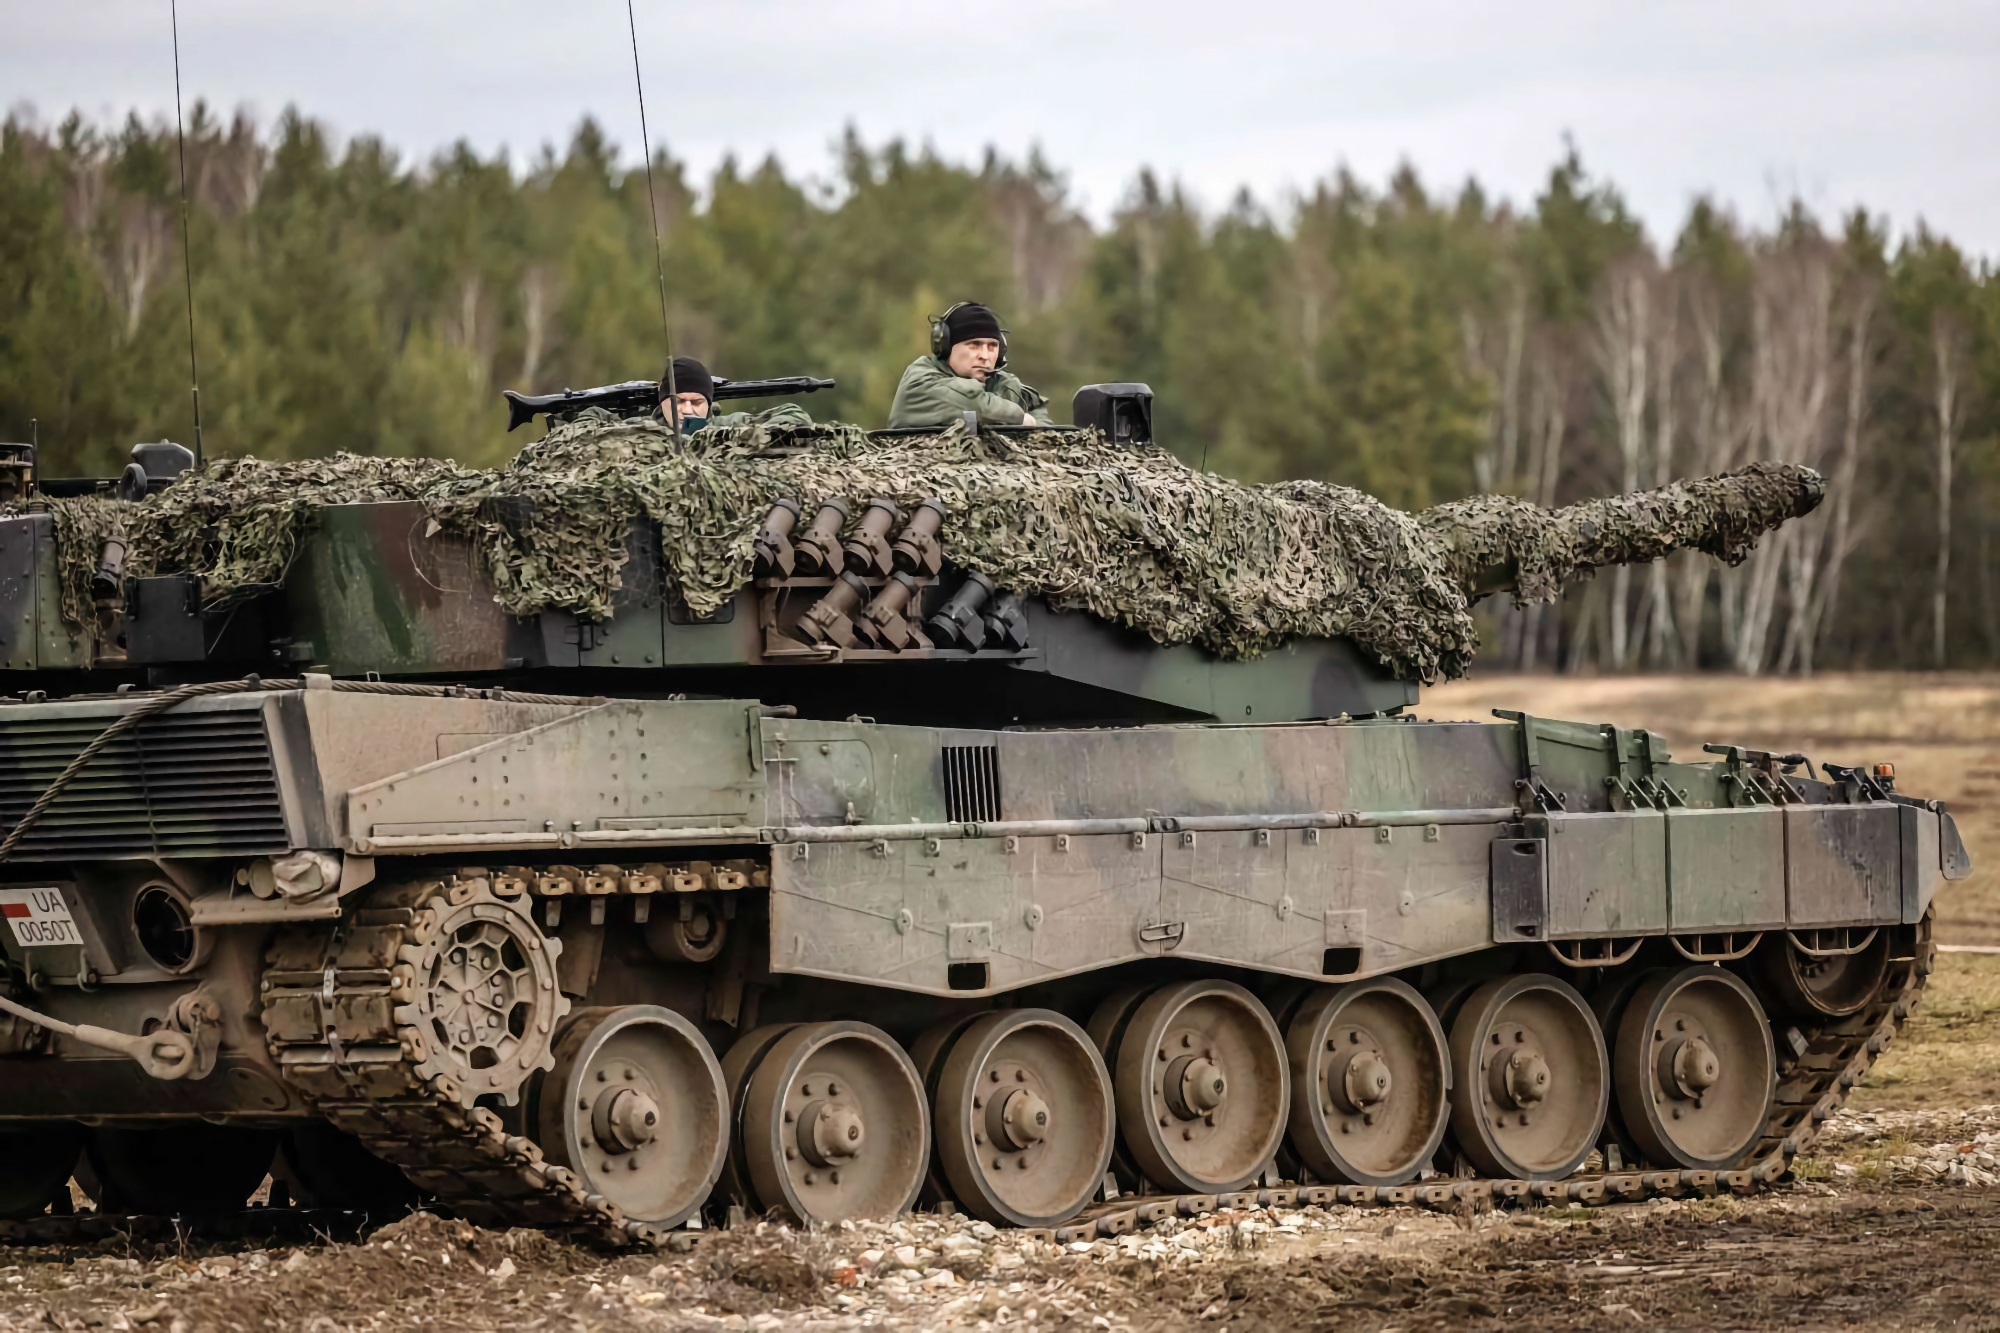 20 M113 APC, 4 Leopard 2 stridsvagnar och ett Role 2 plus fältsjukhus: Spanien skickar nytt militärt stödpaket till Ukraina